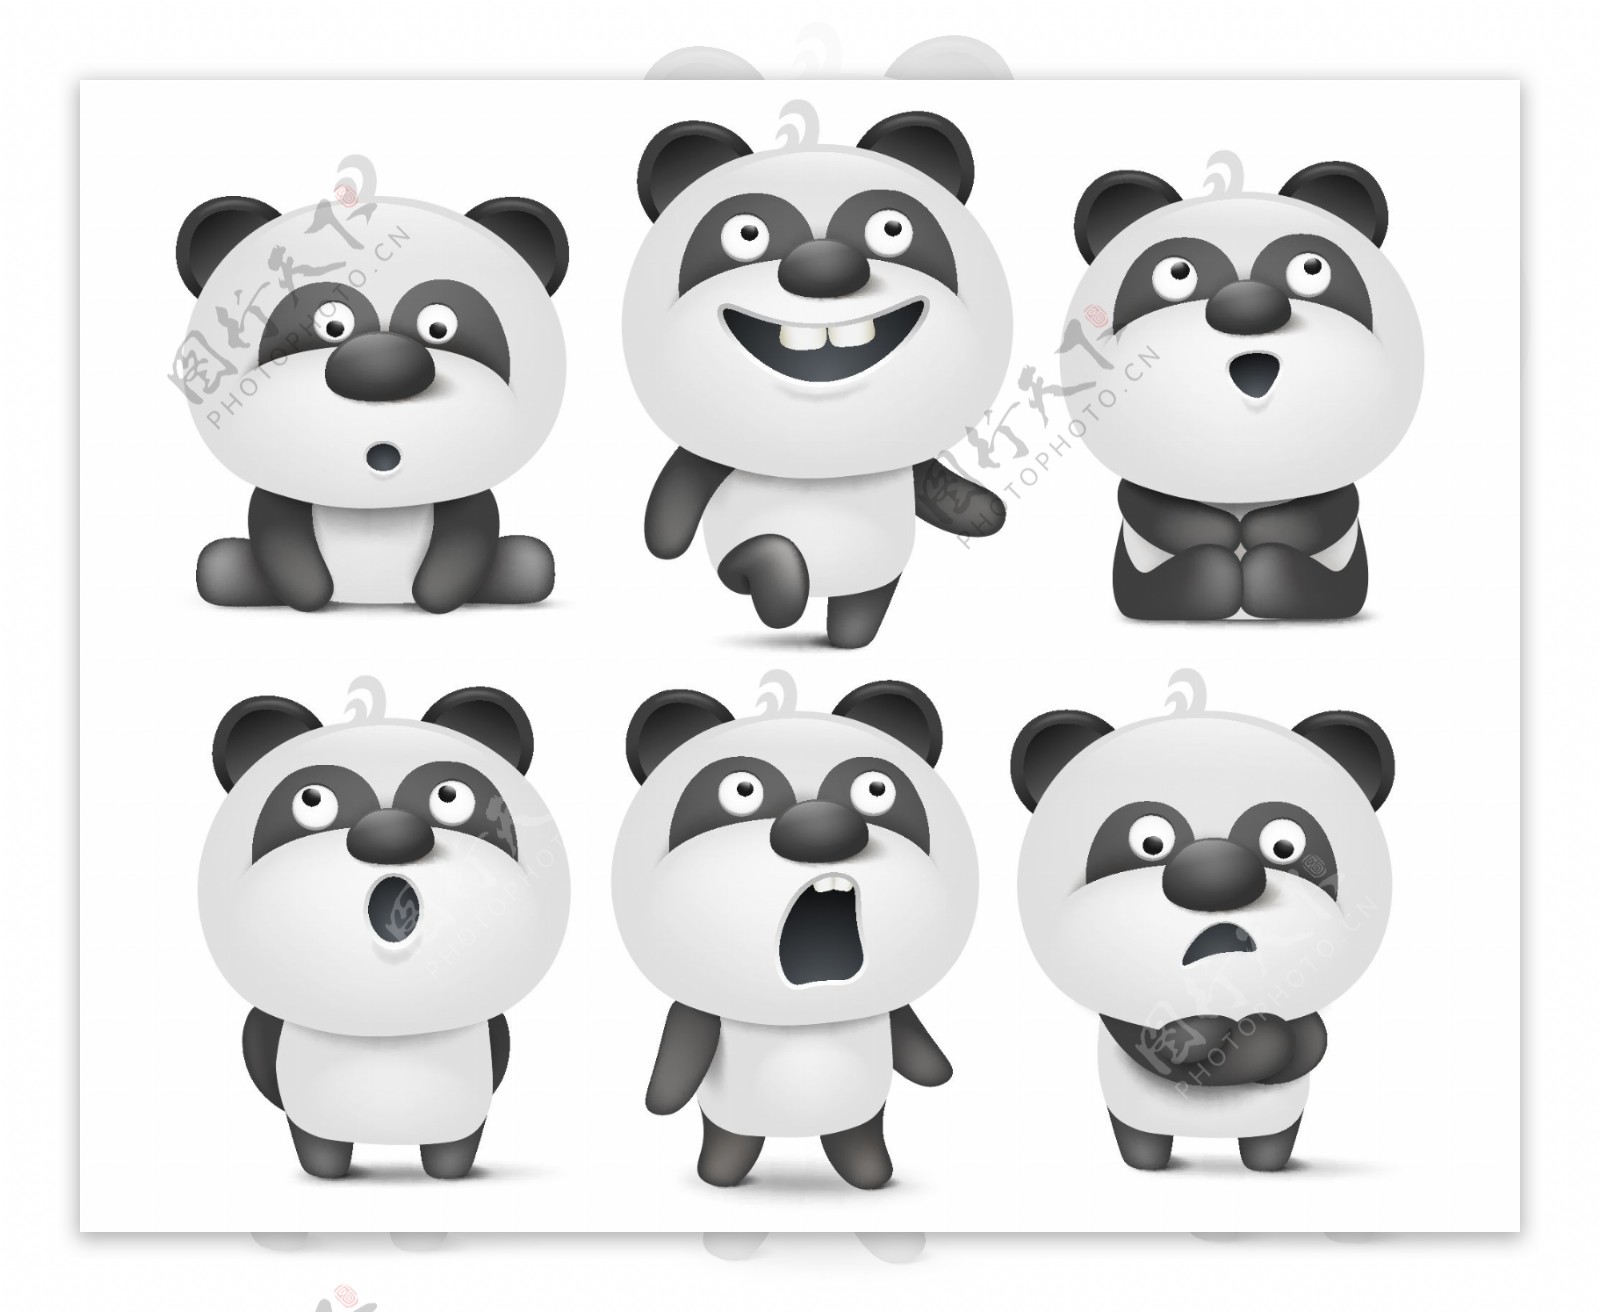 黑色卡通可爱大熊猫表情包